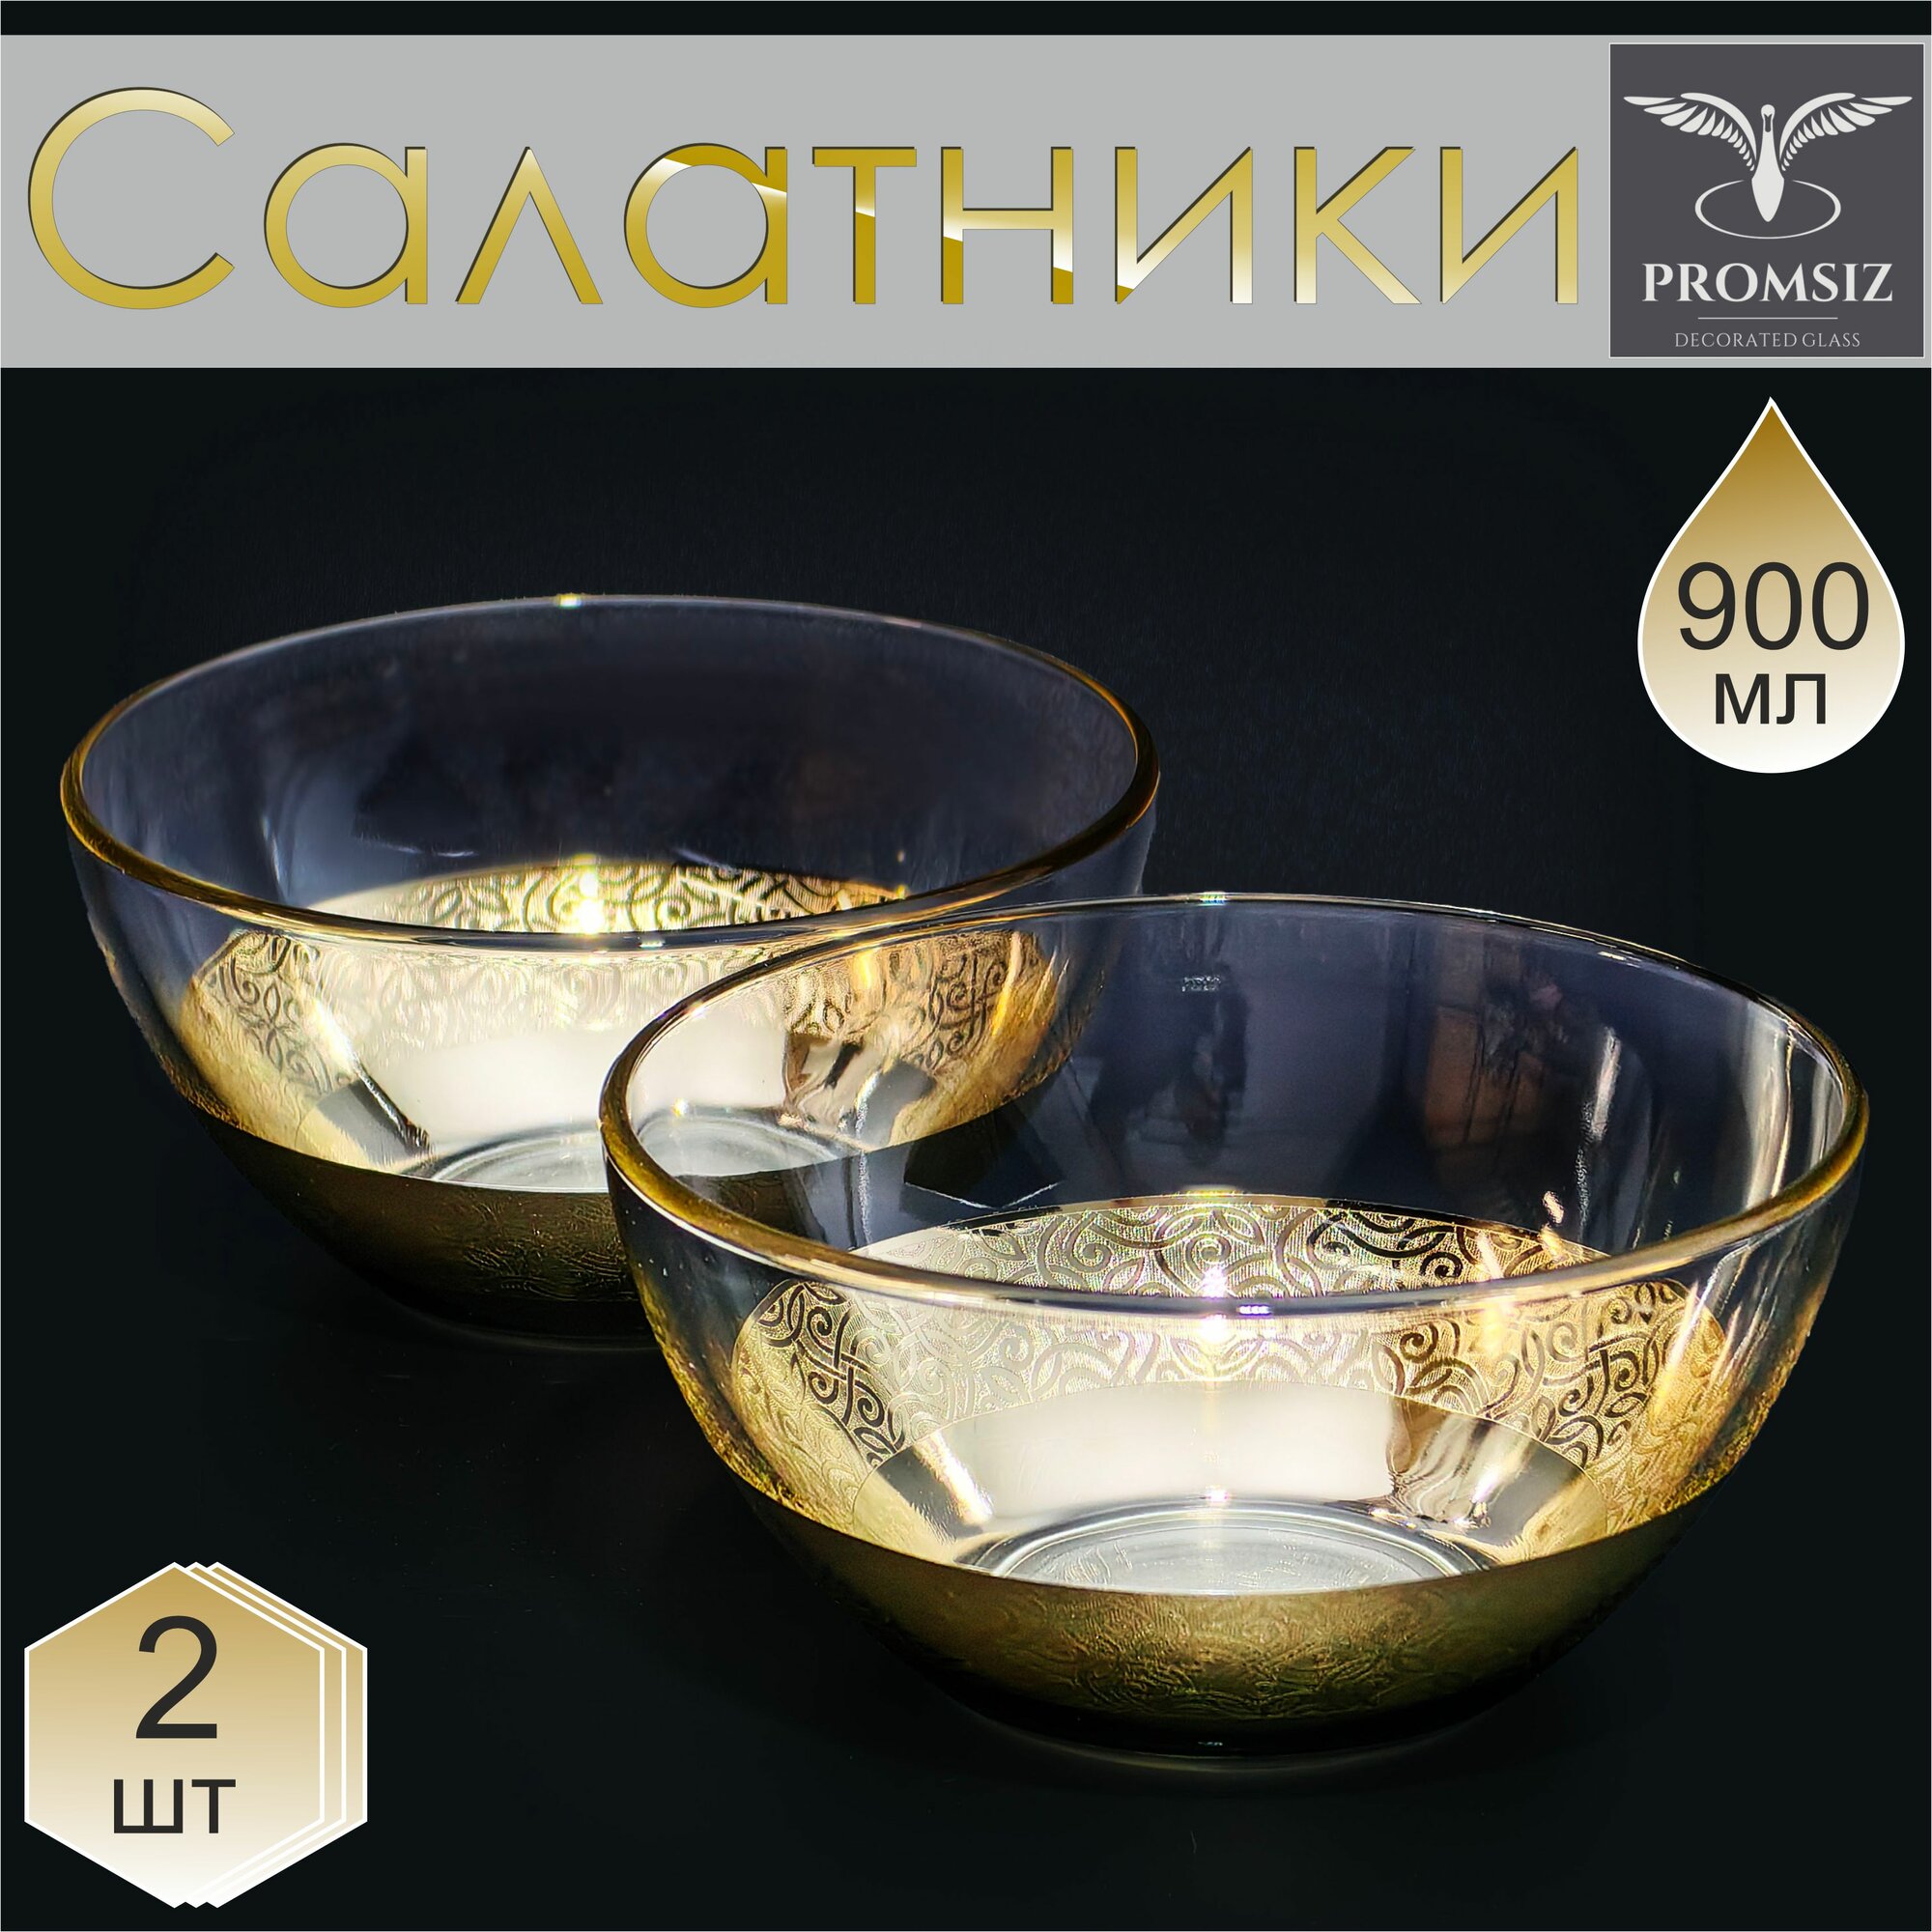 Набор стеклянных салатников с алмазной гравировкой PROMSIZ колизей / Подарочный набор посуды в подарок / Салатница стекло / Посуда для сервировки и подачи / 700 мл, 2 шт.